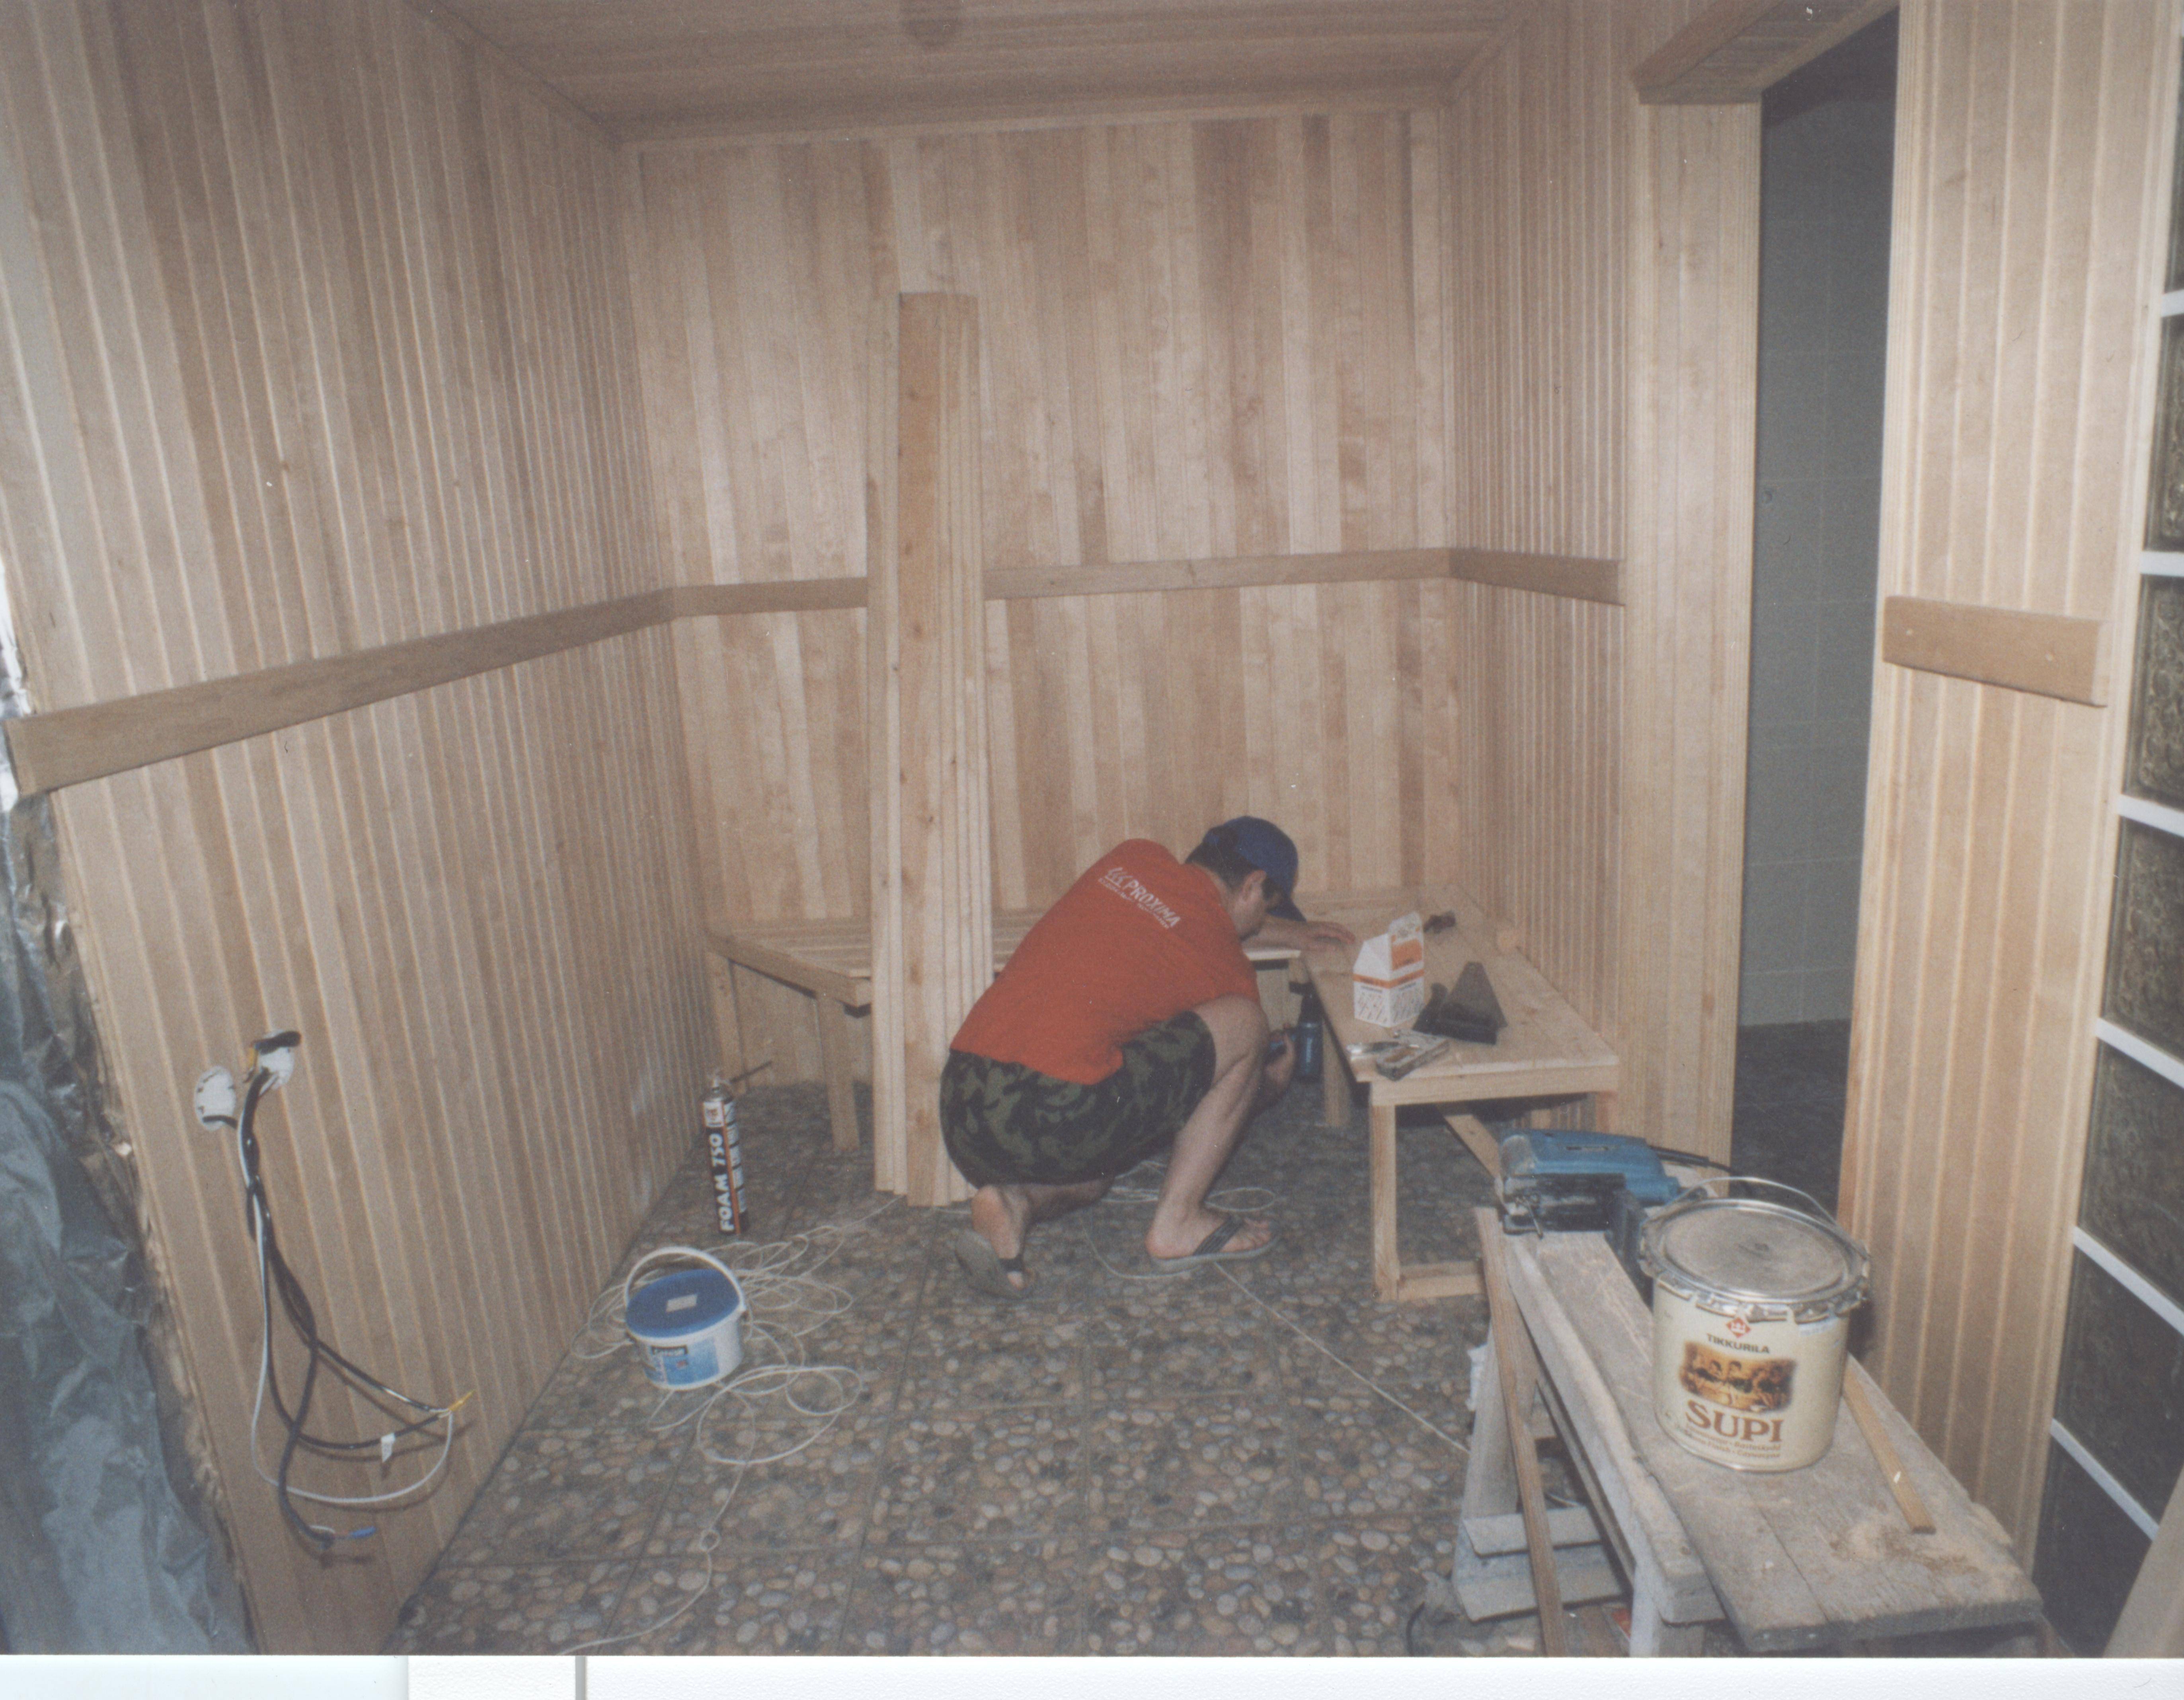 Сауна в квартире своими руками: ванная, балкон, кладовка. проекты и фото